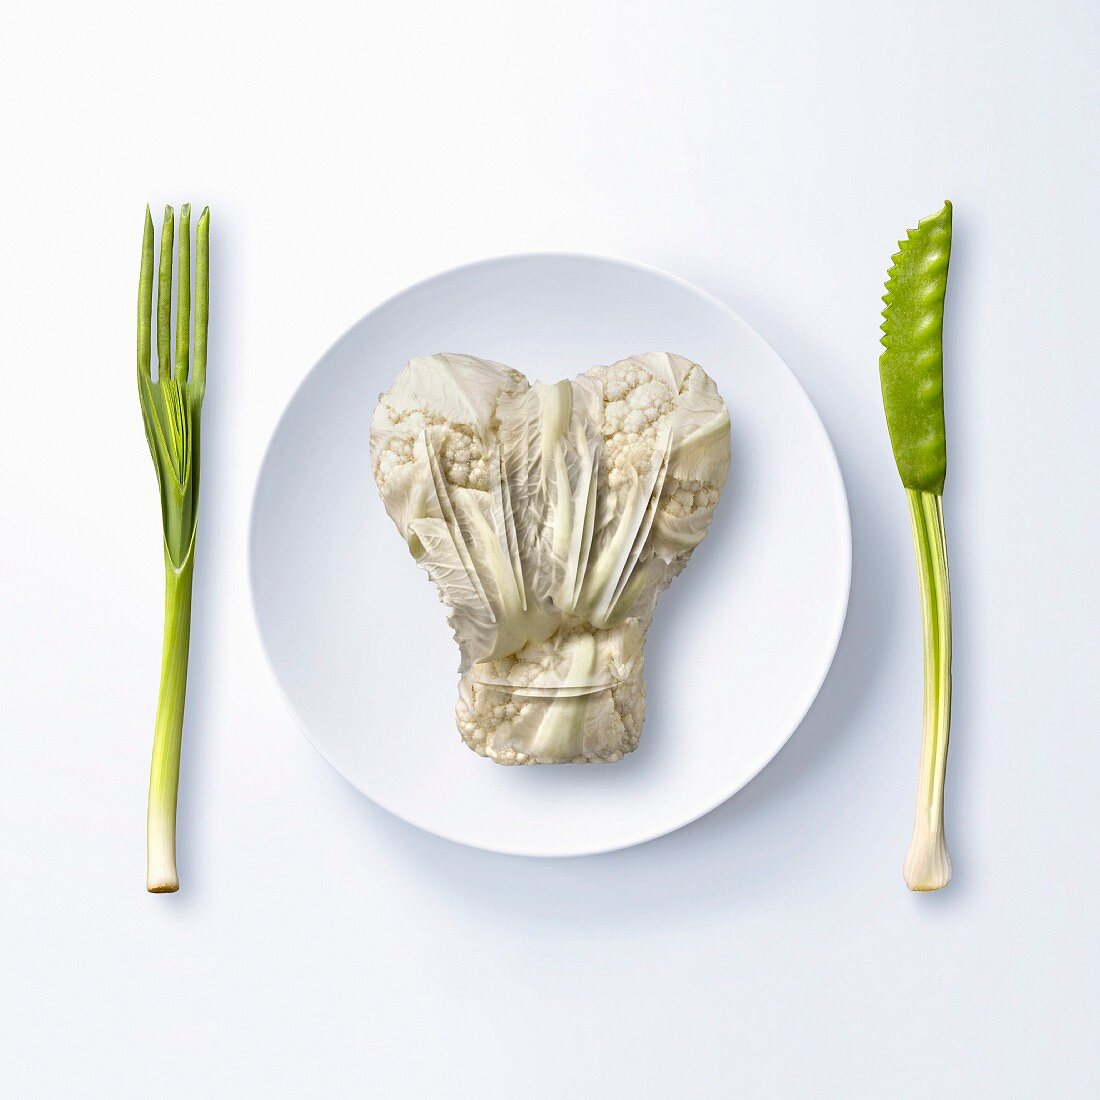 Blumenkohl in Form einer Kochhaube auf Teller, daneben Besteck aus Gemüse (Symbolbild)